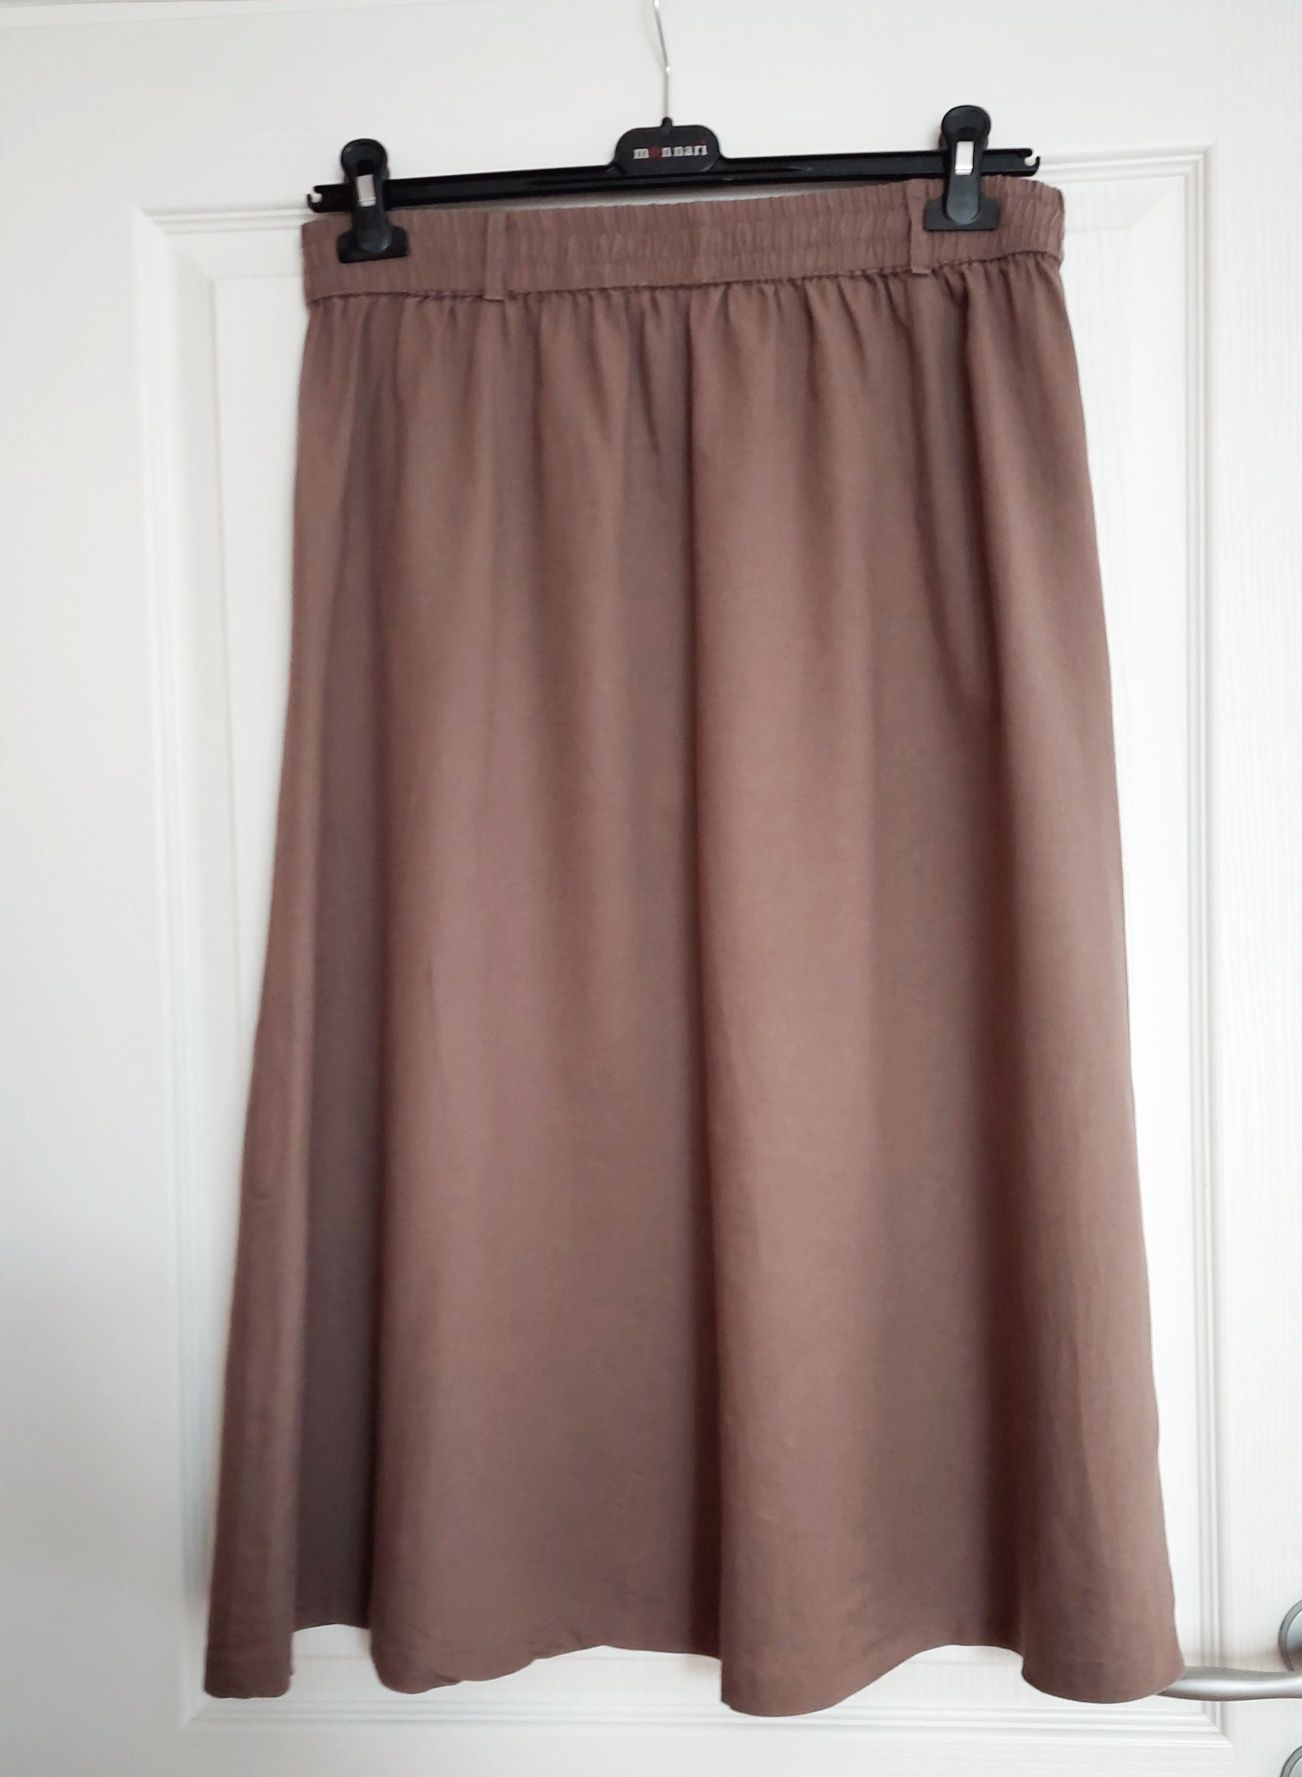 Spódnica w kolorze marengo, Greenpoint, rozmiar 40.